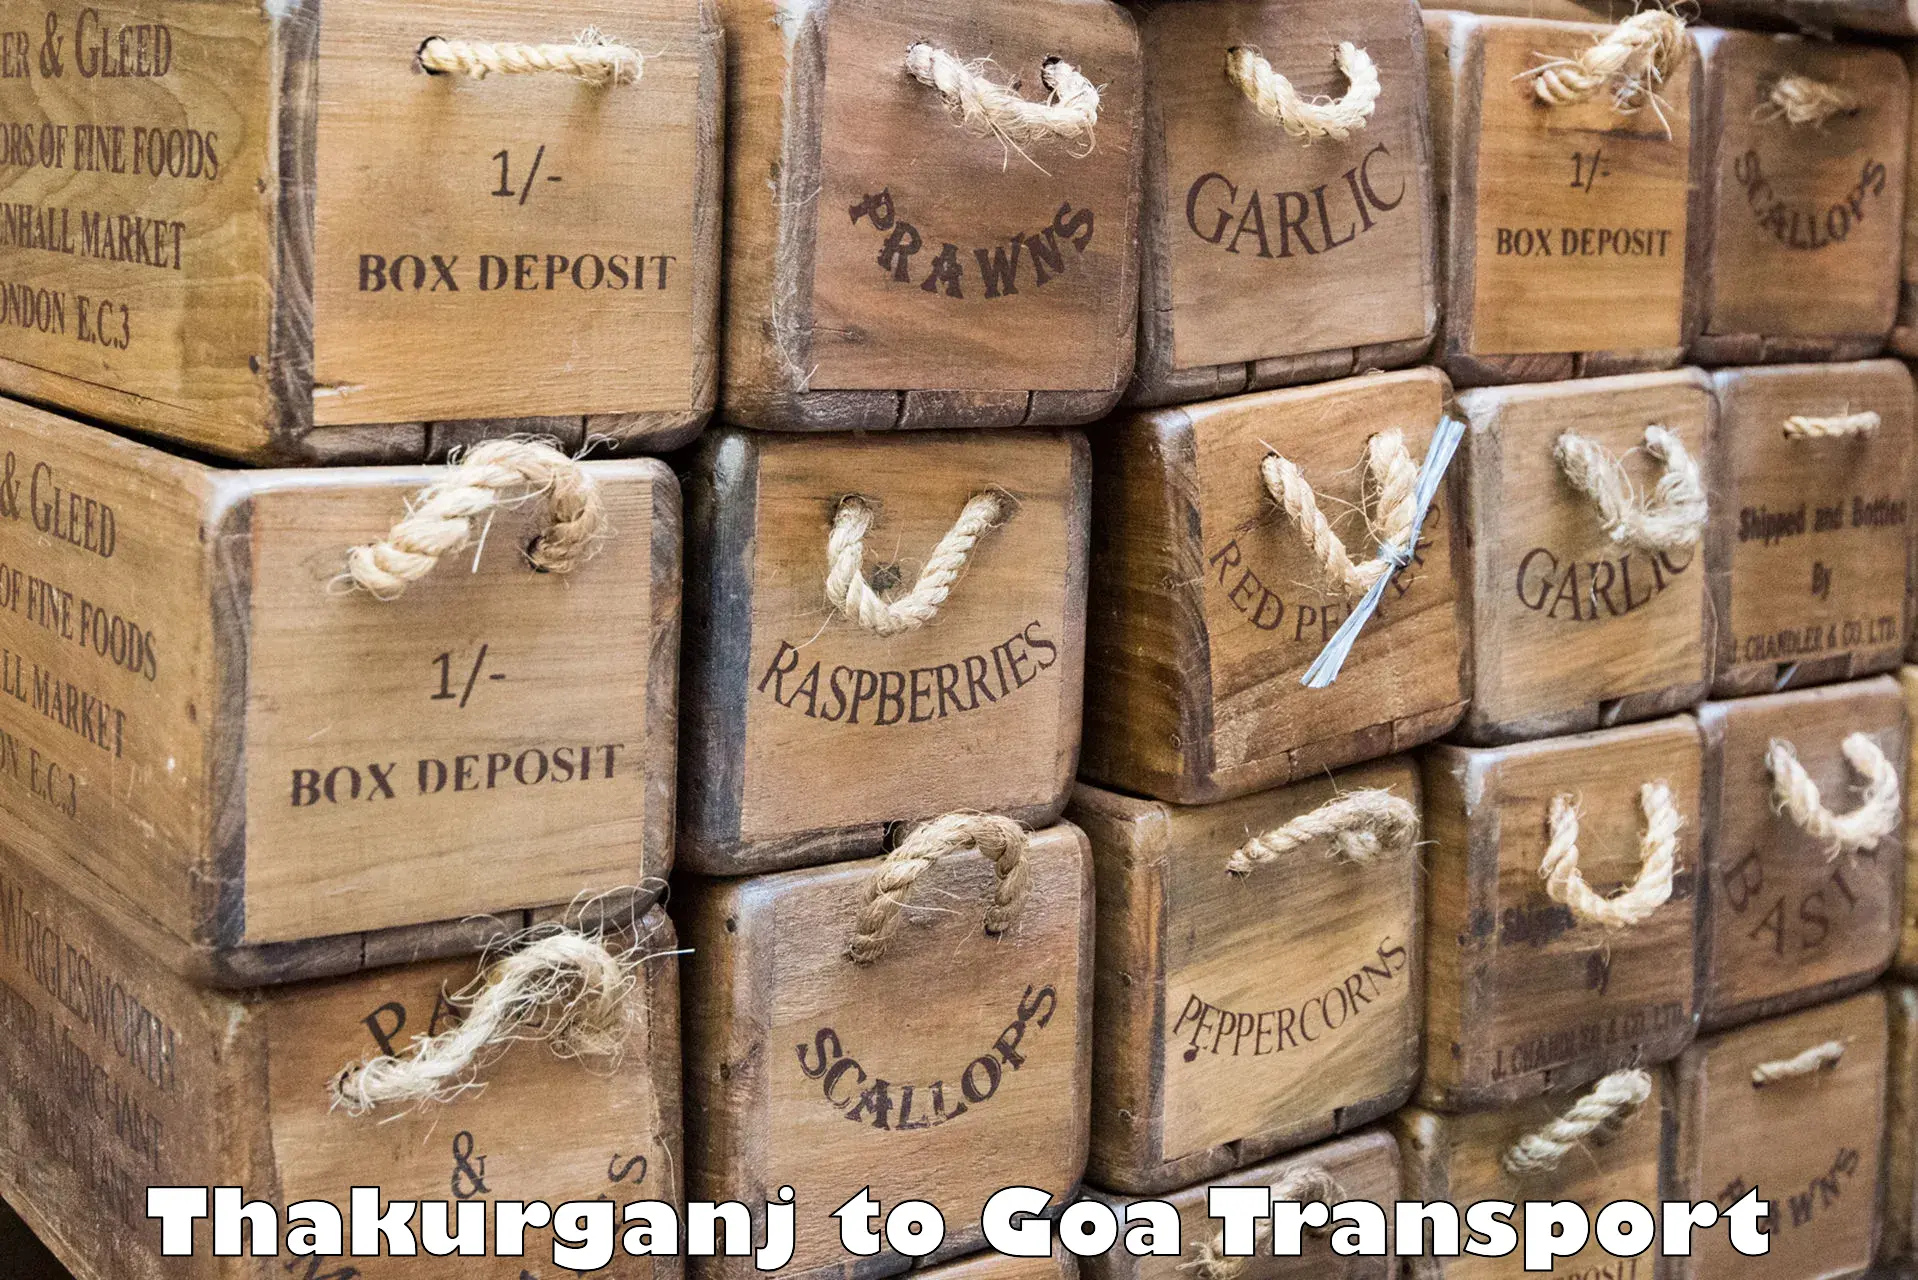 Transport shared services Thakurganj to Vasco da Gama